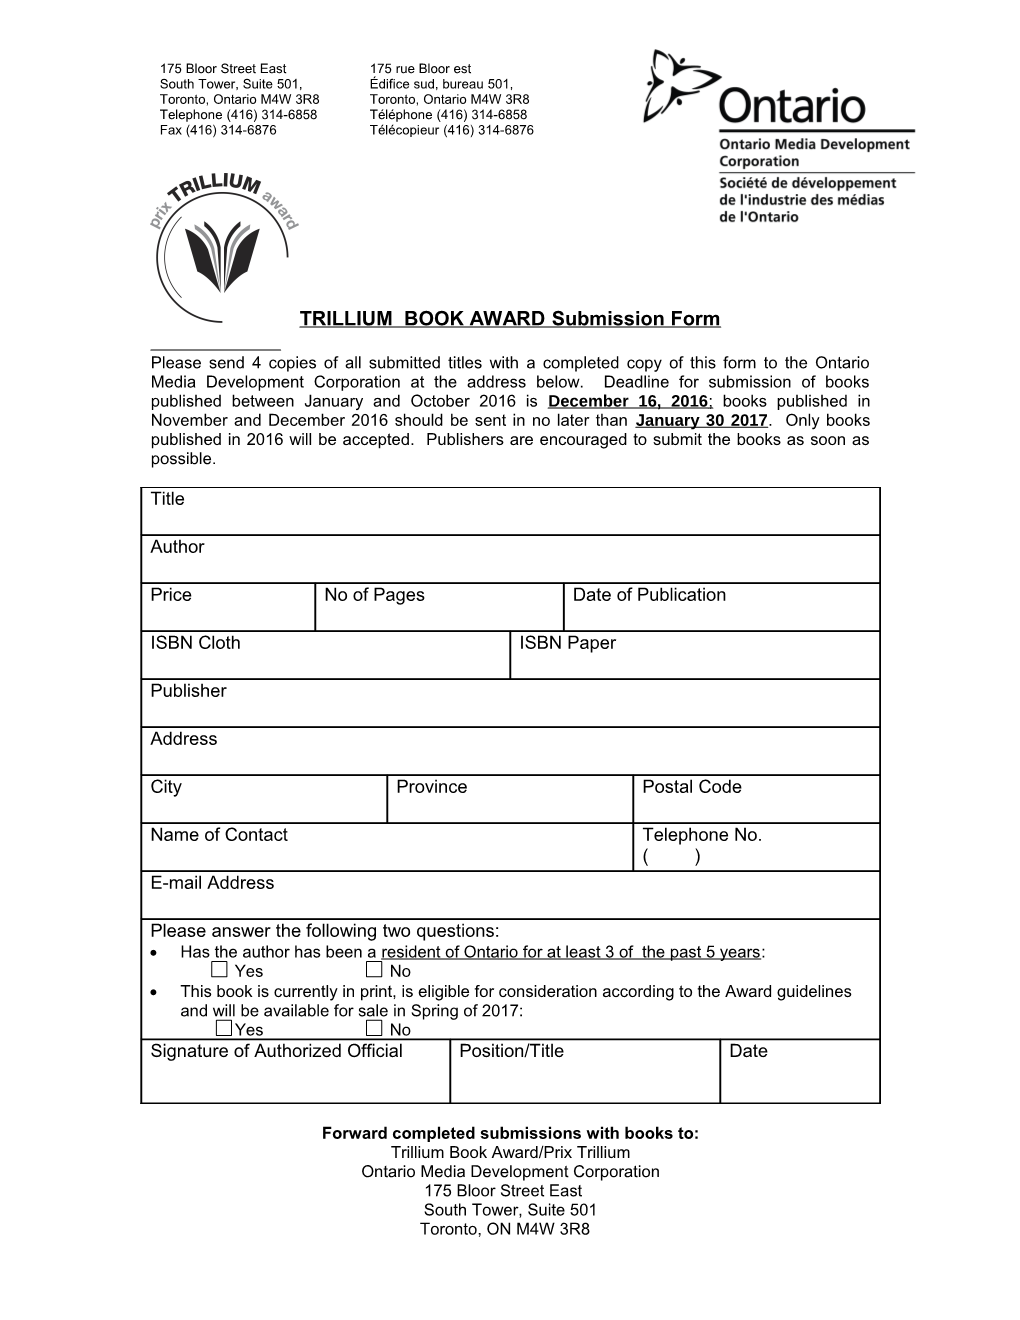 TRILLIUM BOOK AWARD Submission Form